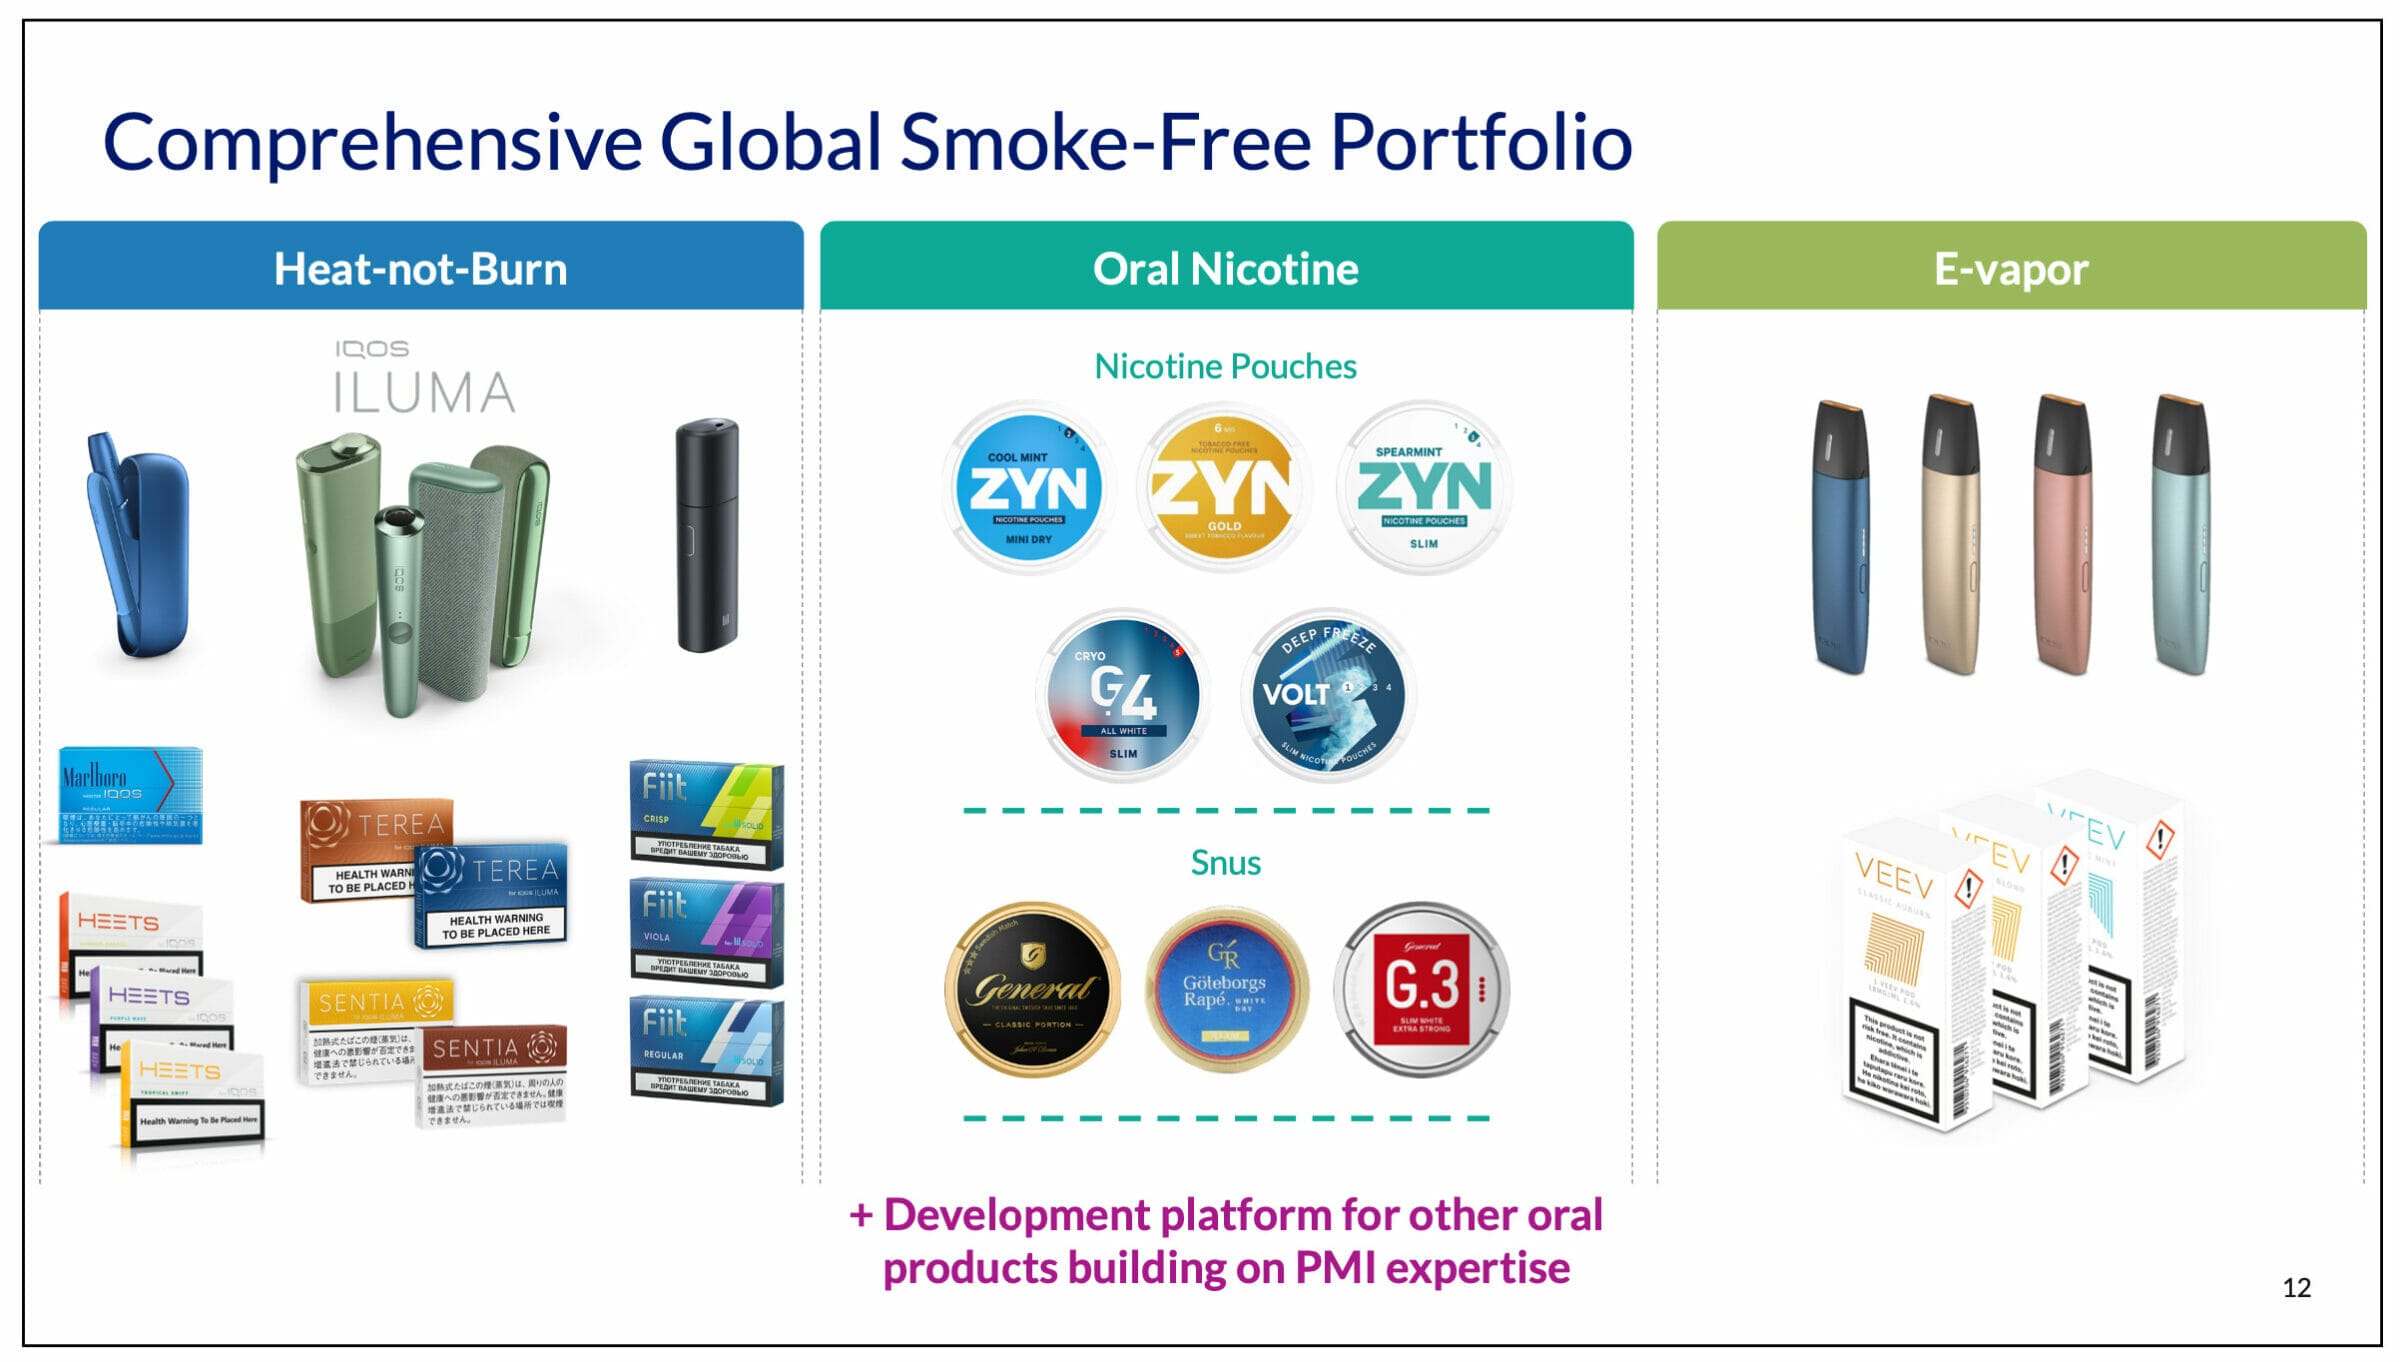 Die 3 Plattformen an Risiko-reduzierten Produkten, die die klassische Zigarette ablösen.